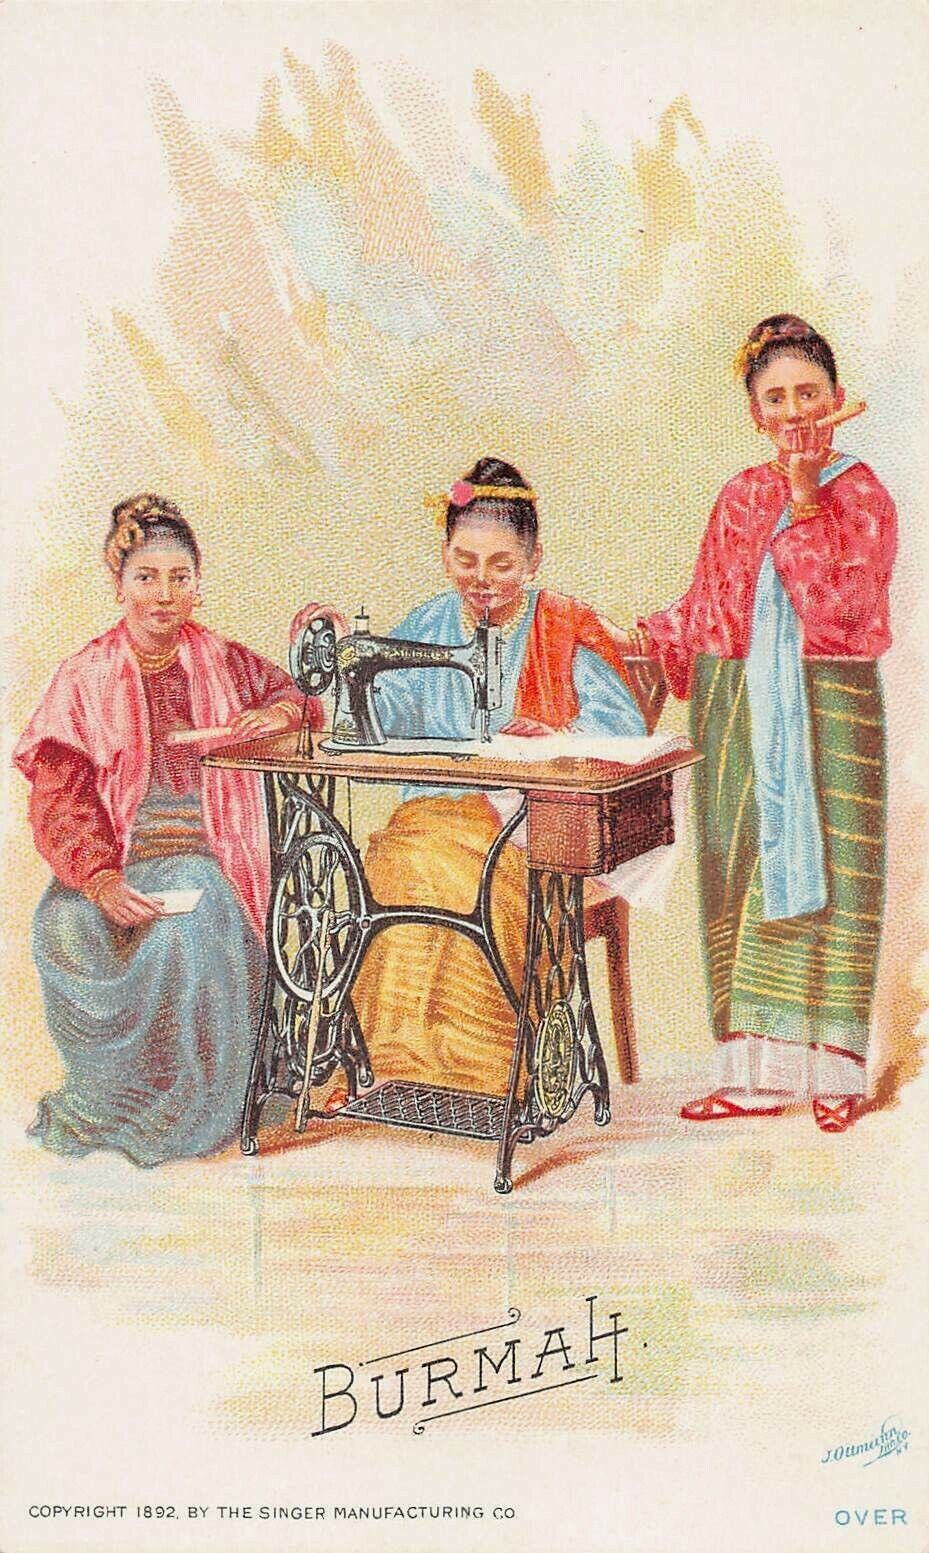 Burma, Singer Sewing Machine Co., 1892 Trade Card Showing 3 Burmese Women Sewing